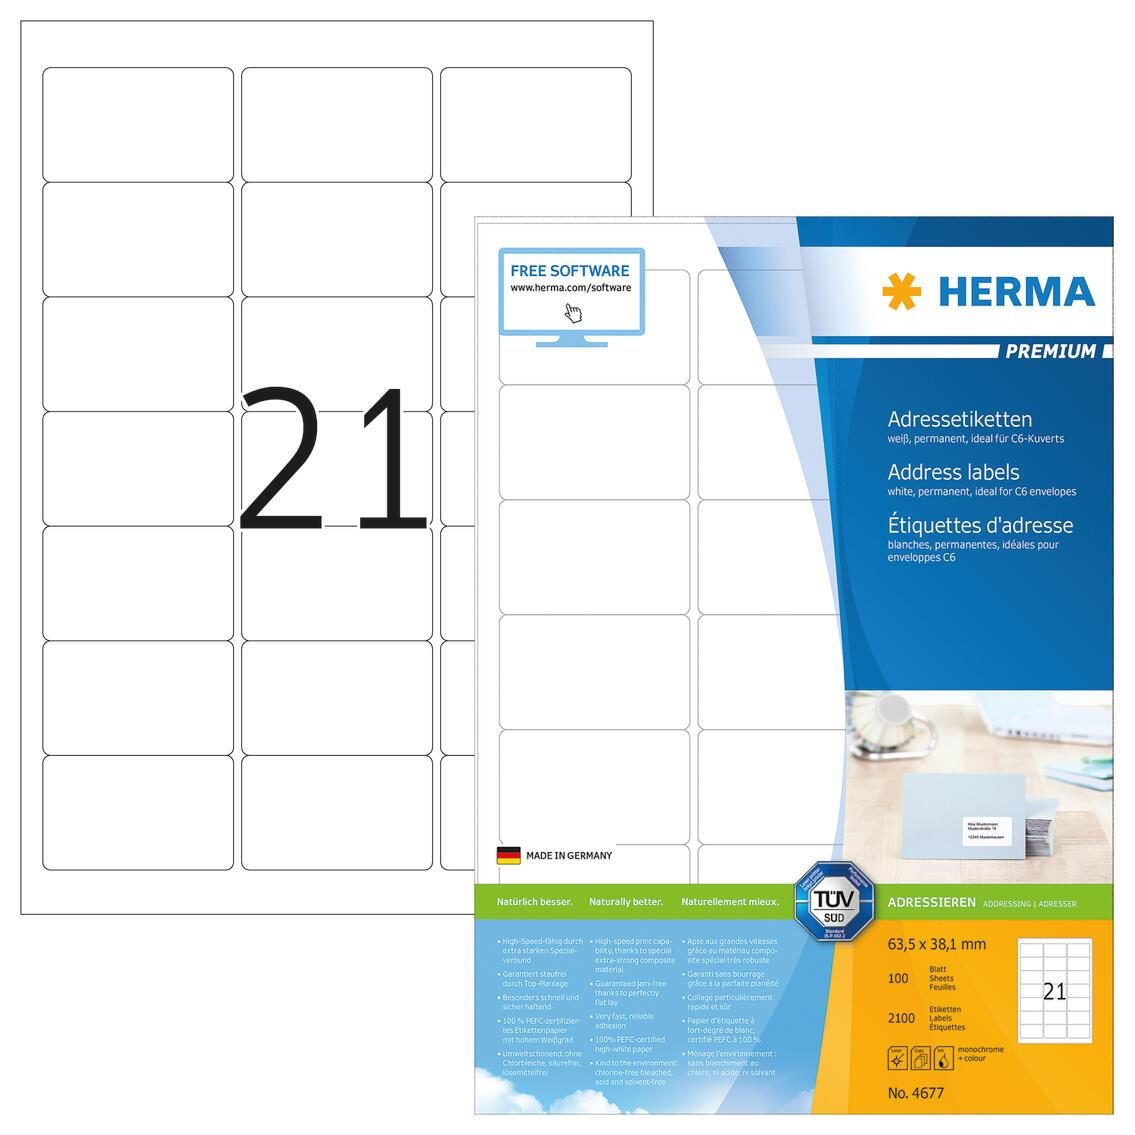 HERMA Universaletiketten 4677 63,5 x 38,1 mm weiß von HERMA